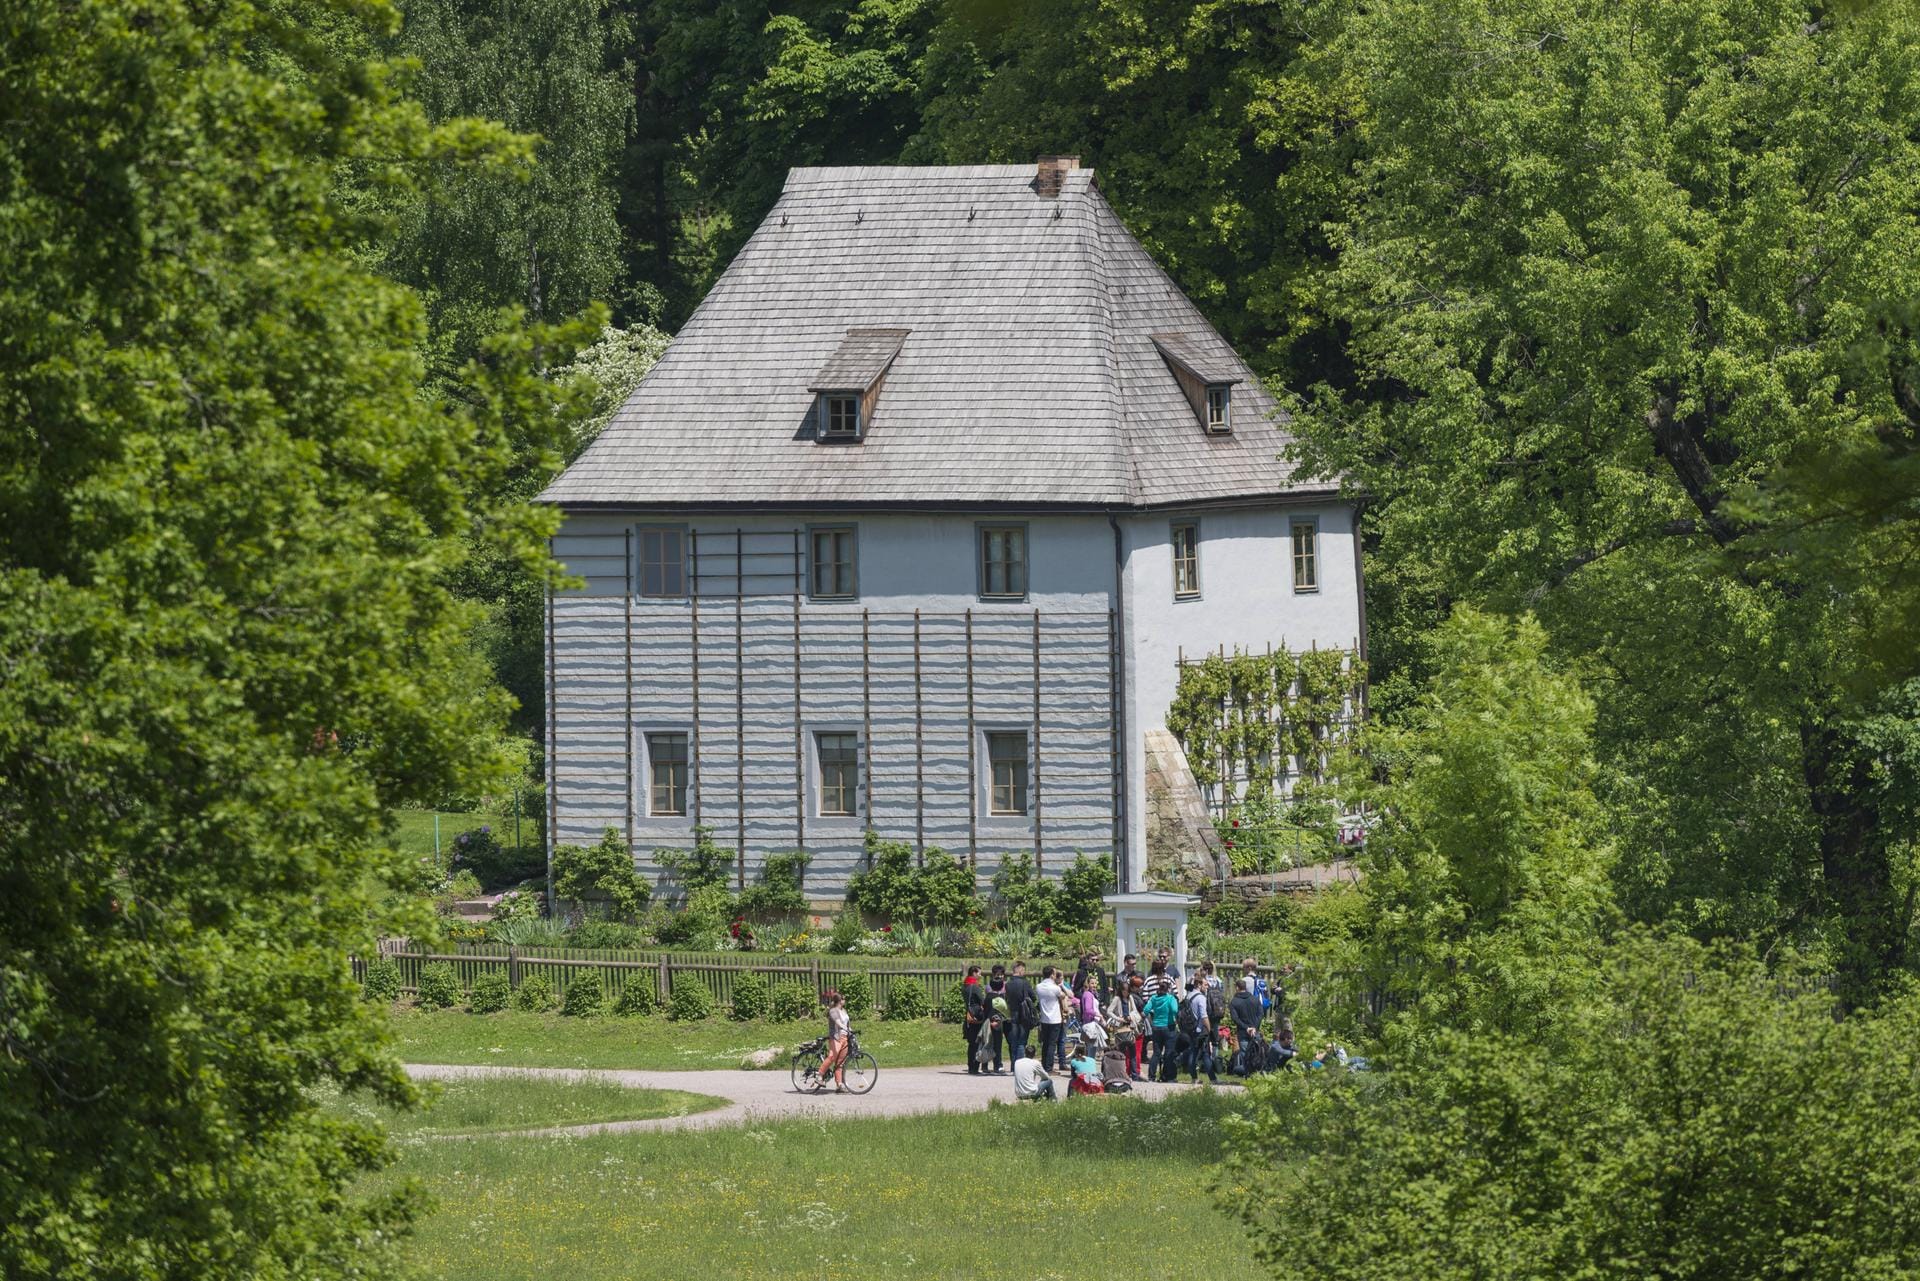 Goethes Gartenhaus im zauberhaften Park an der Ilm in Weimar, Thüringen.